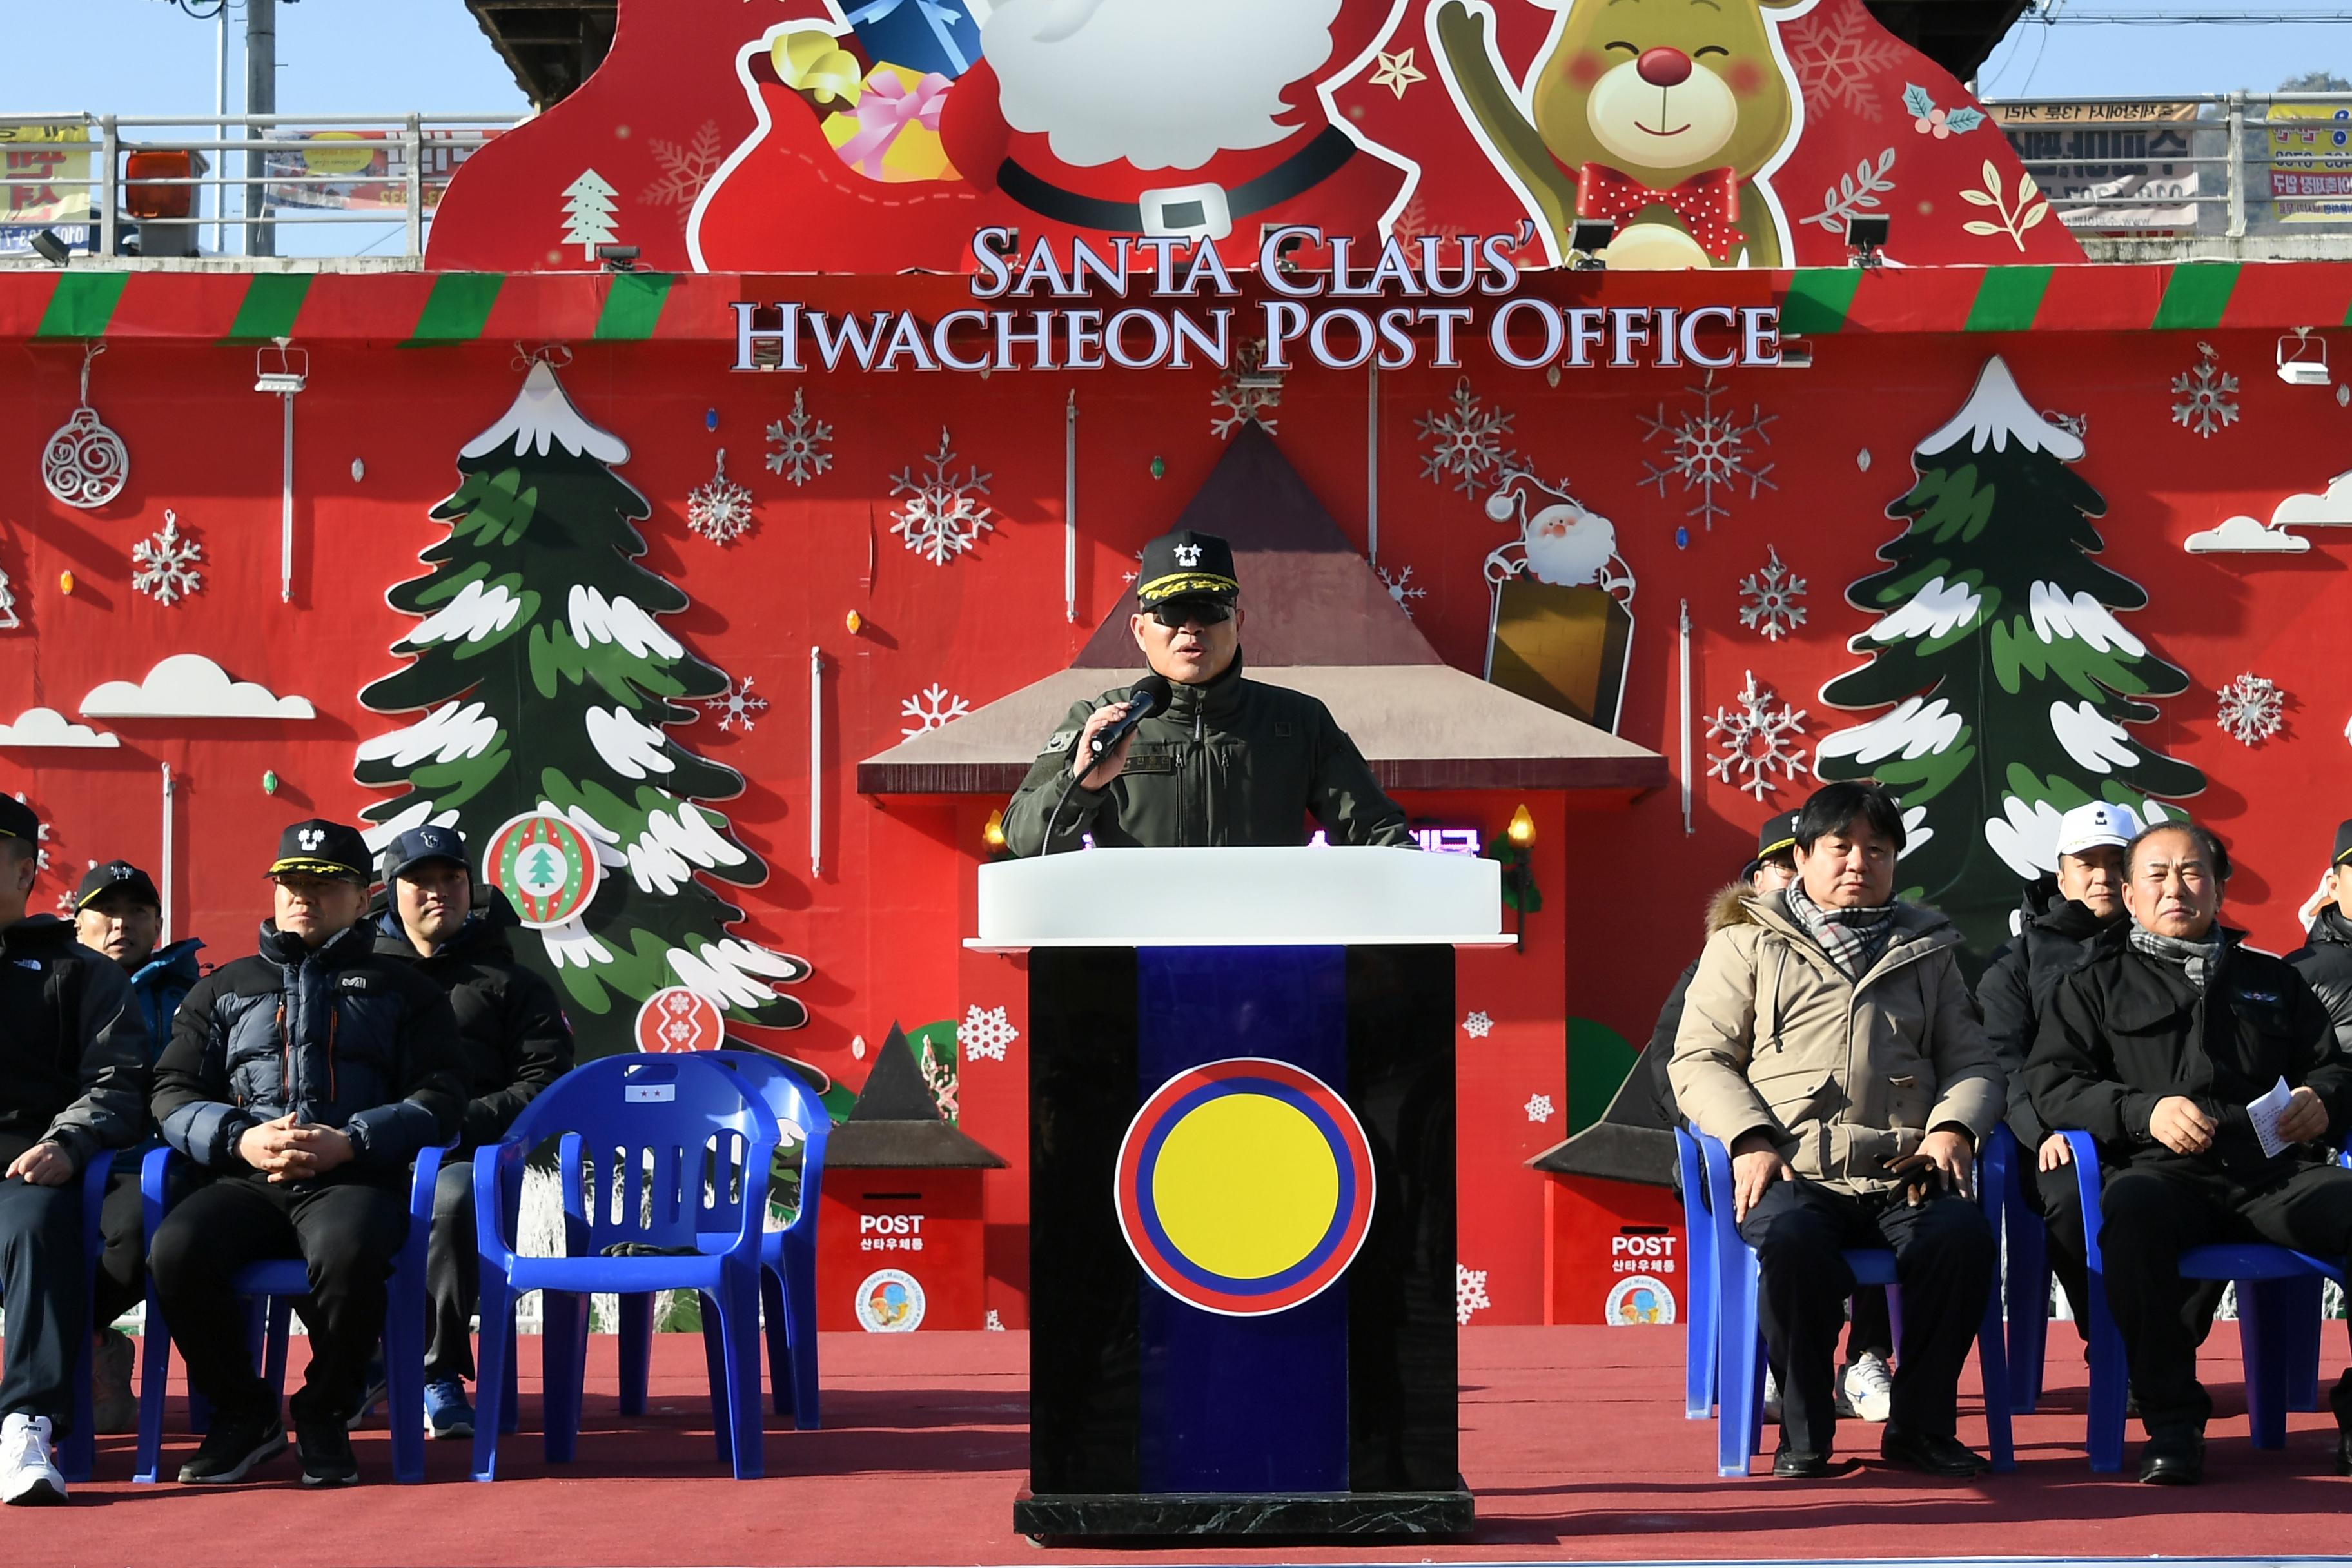 2019 화천산천어축제장 군장병 체험의 날 육군 제15사단 의 사진